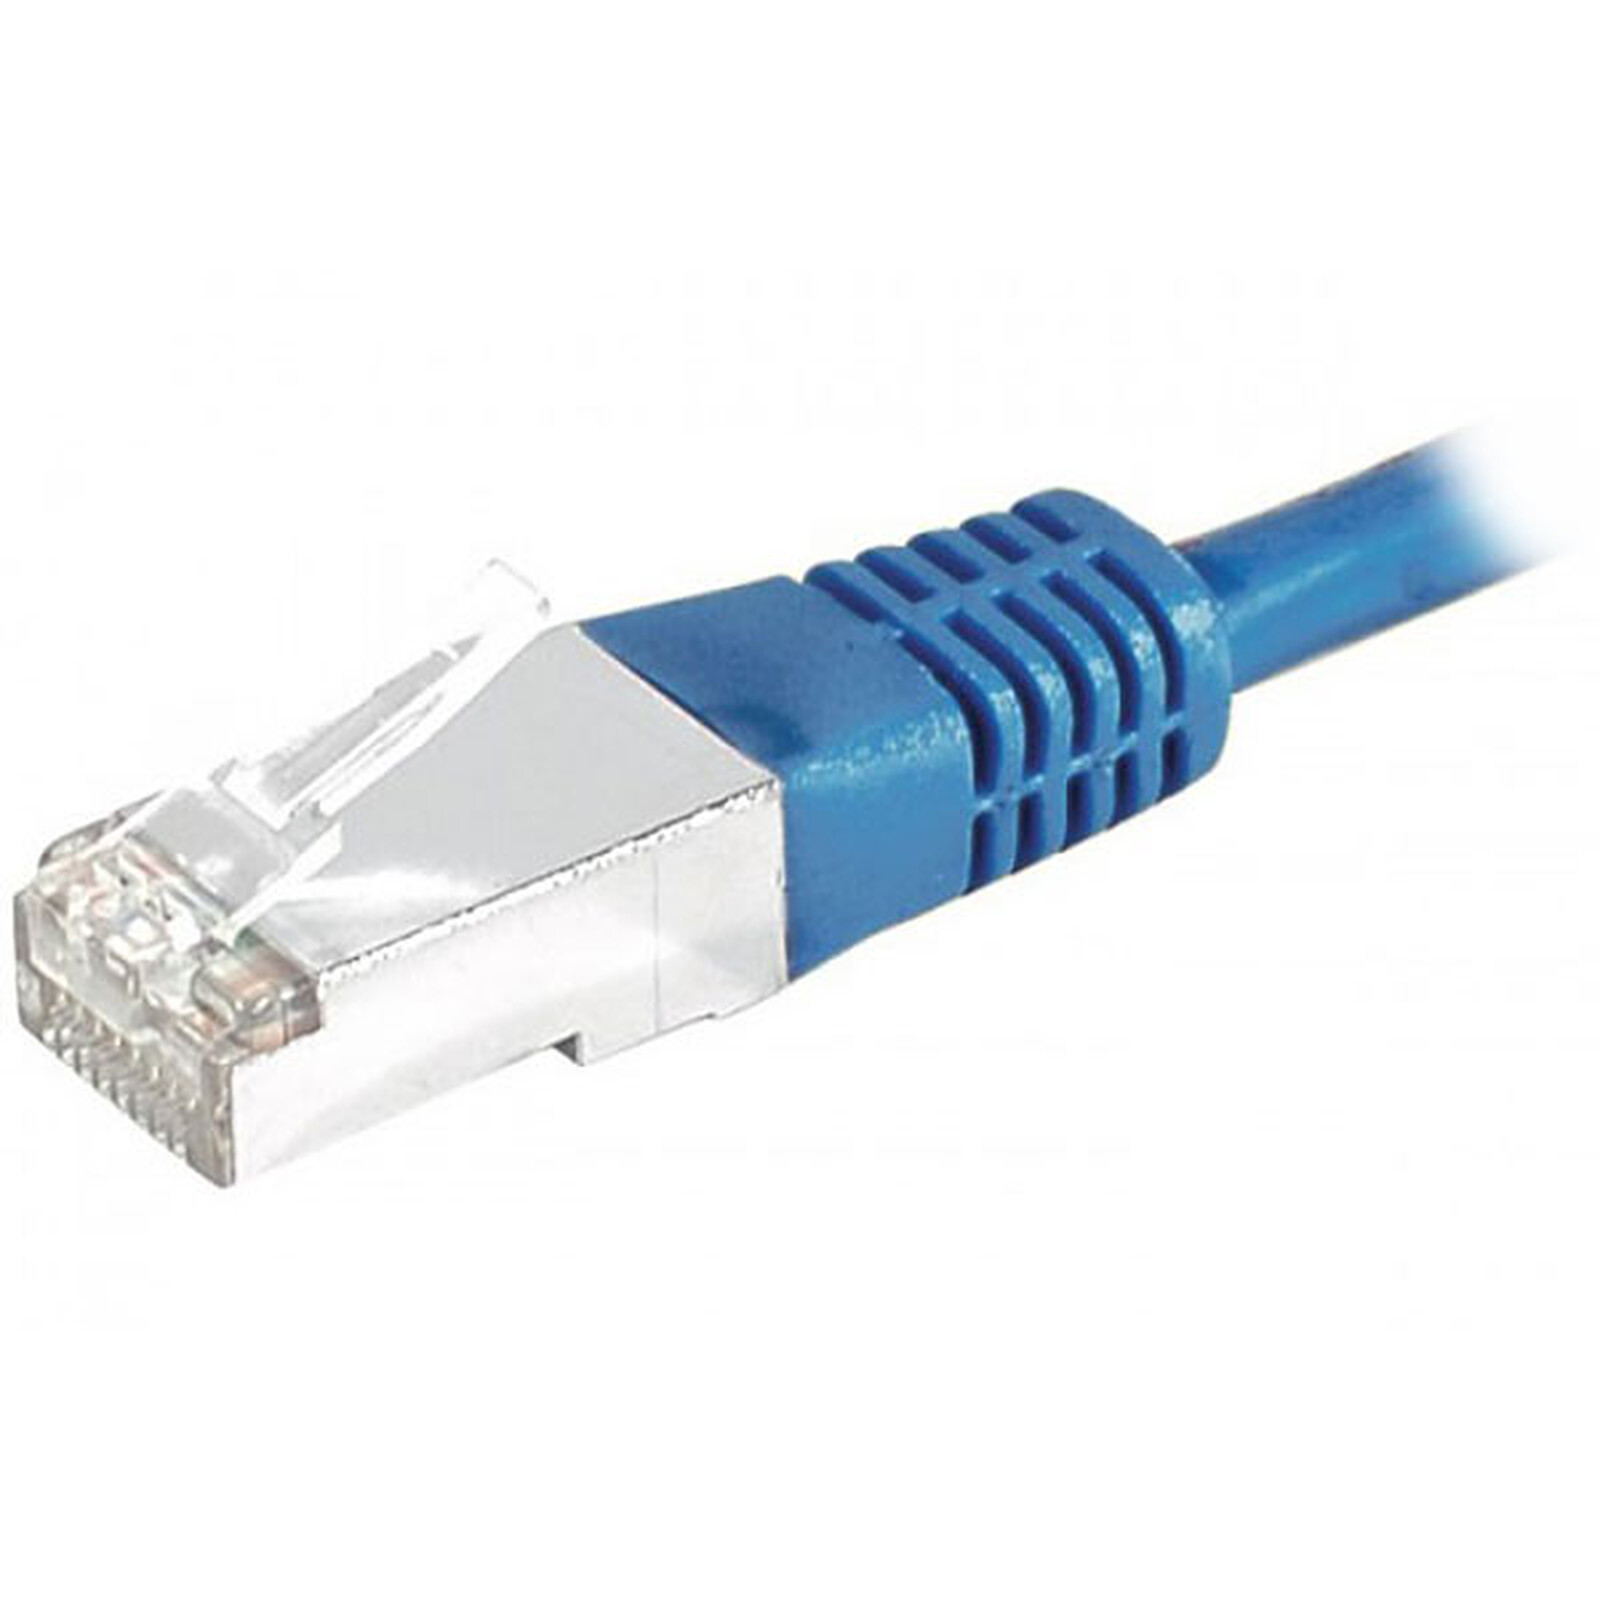 Câble RJ45 catégorie 6 S/FTP 2 m (Bleu) - Câble RJ45 - Garantie 3 ans LDLC